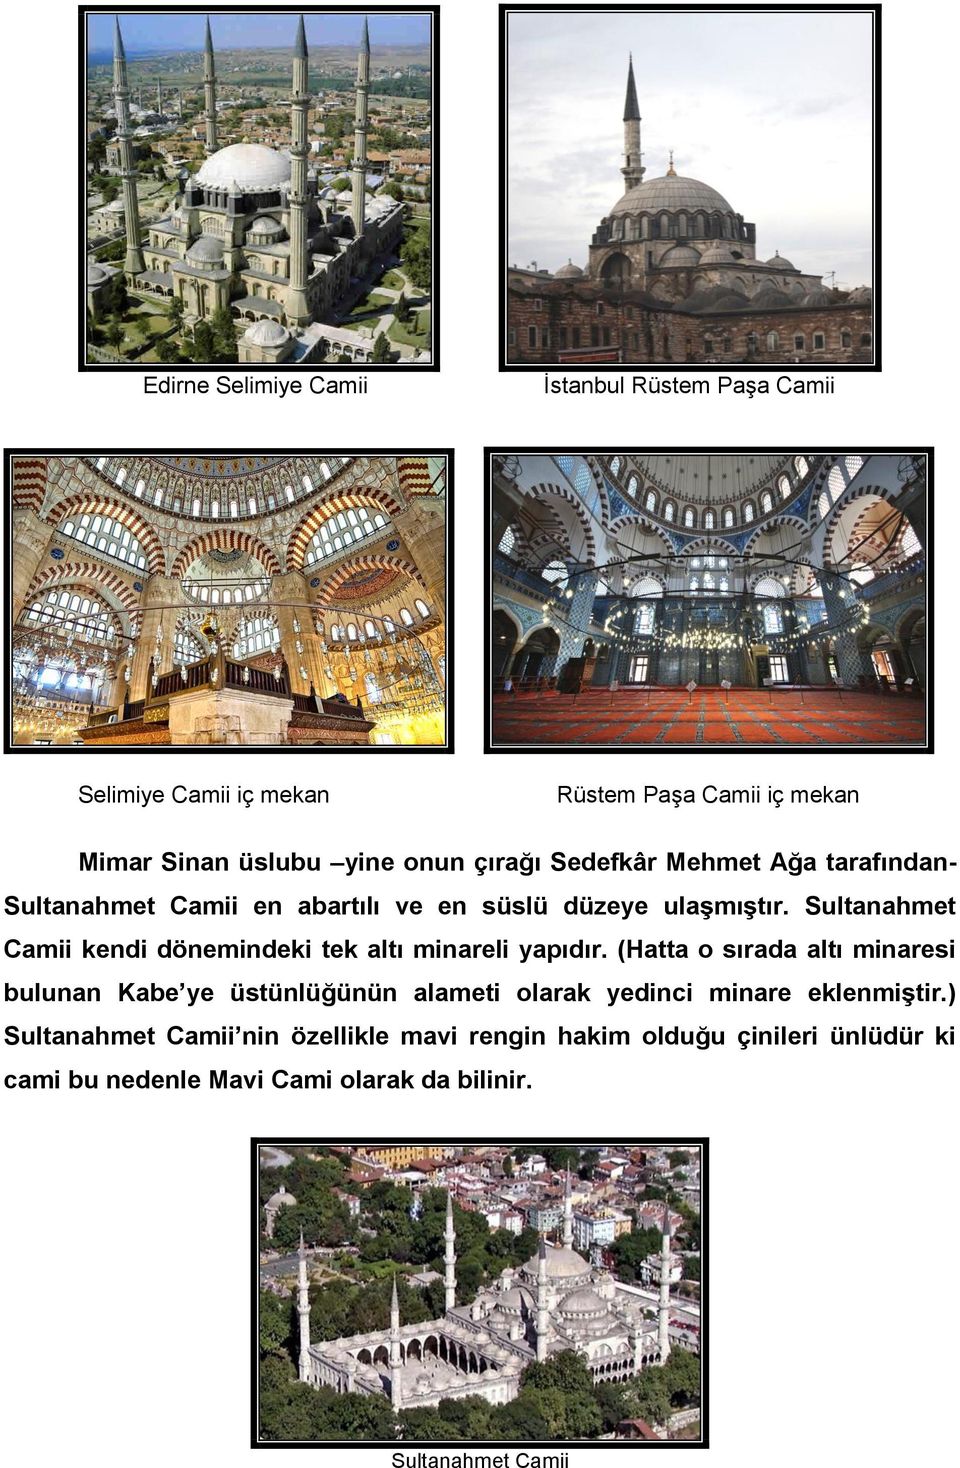 Sultanahmet Camii kendi dönemindeki tek altı minareli yapıdır.